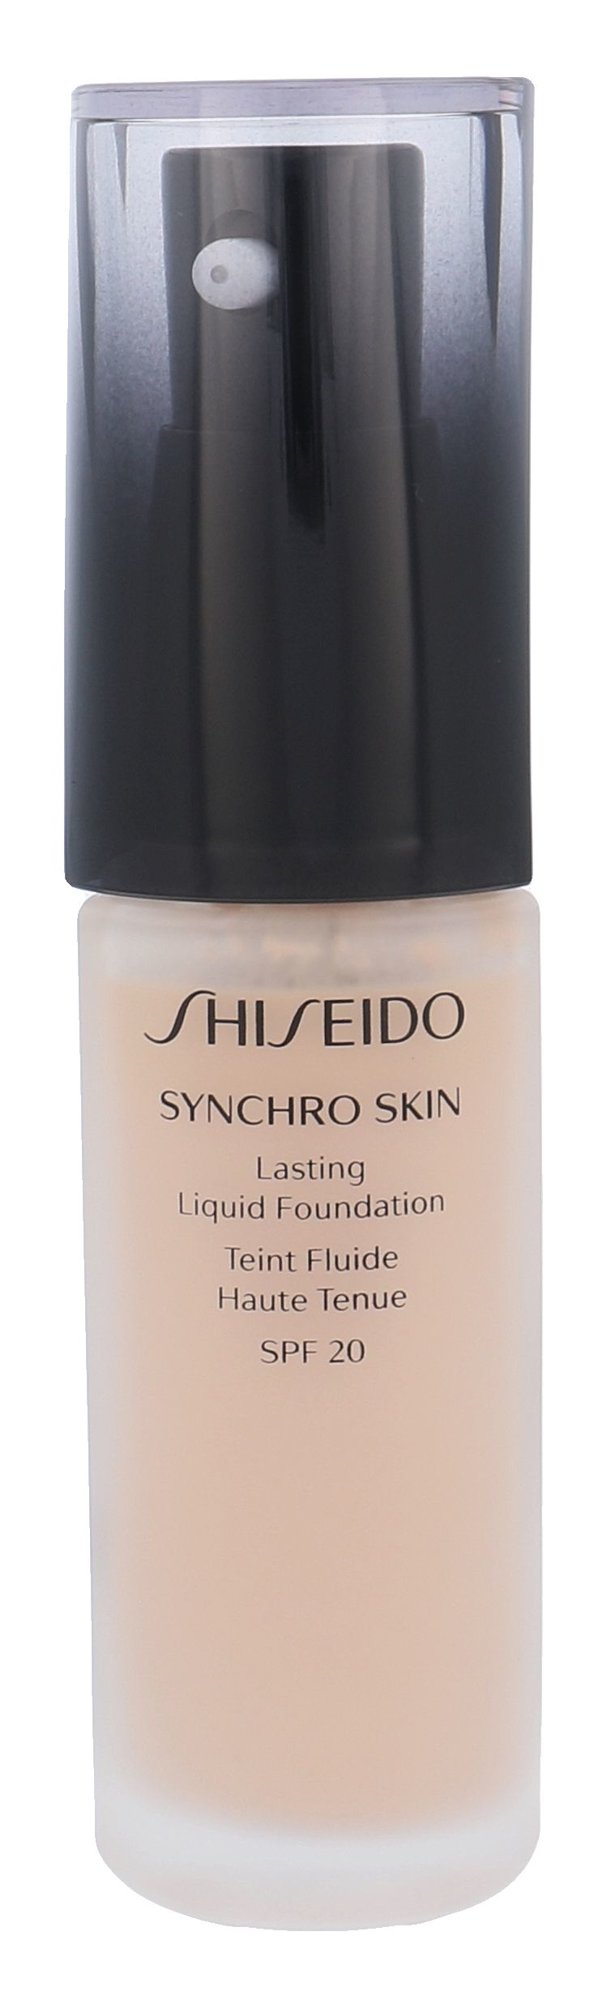 Shiseido Synchro Skin Lasting Liquid Foundation 30ml makiažo pagrindas